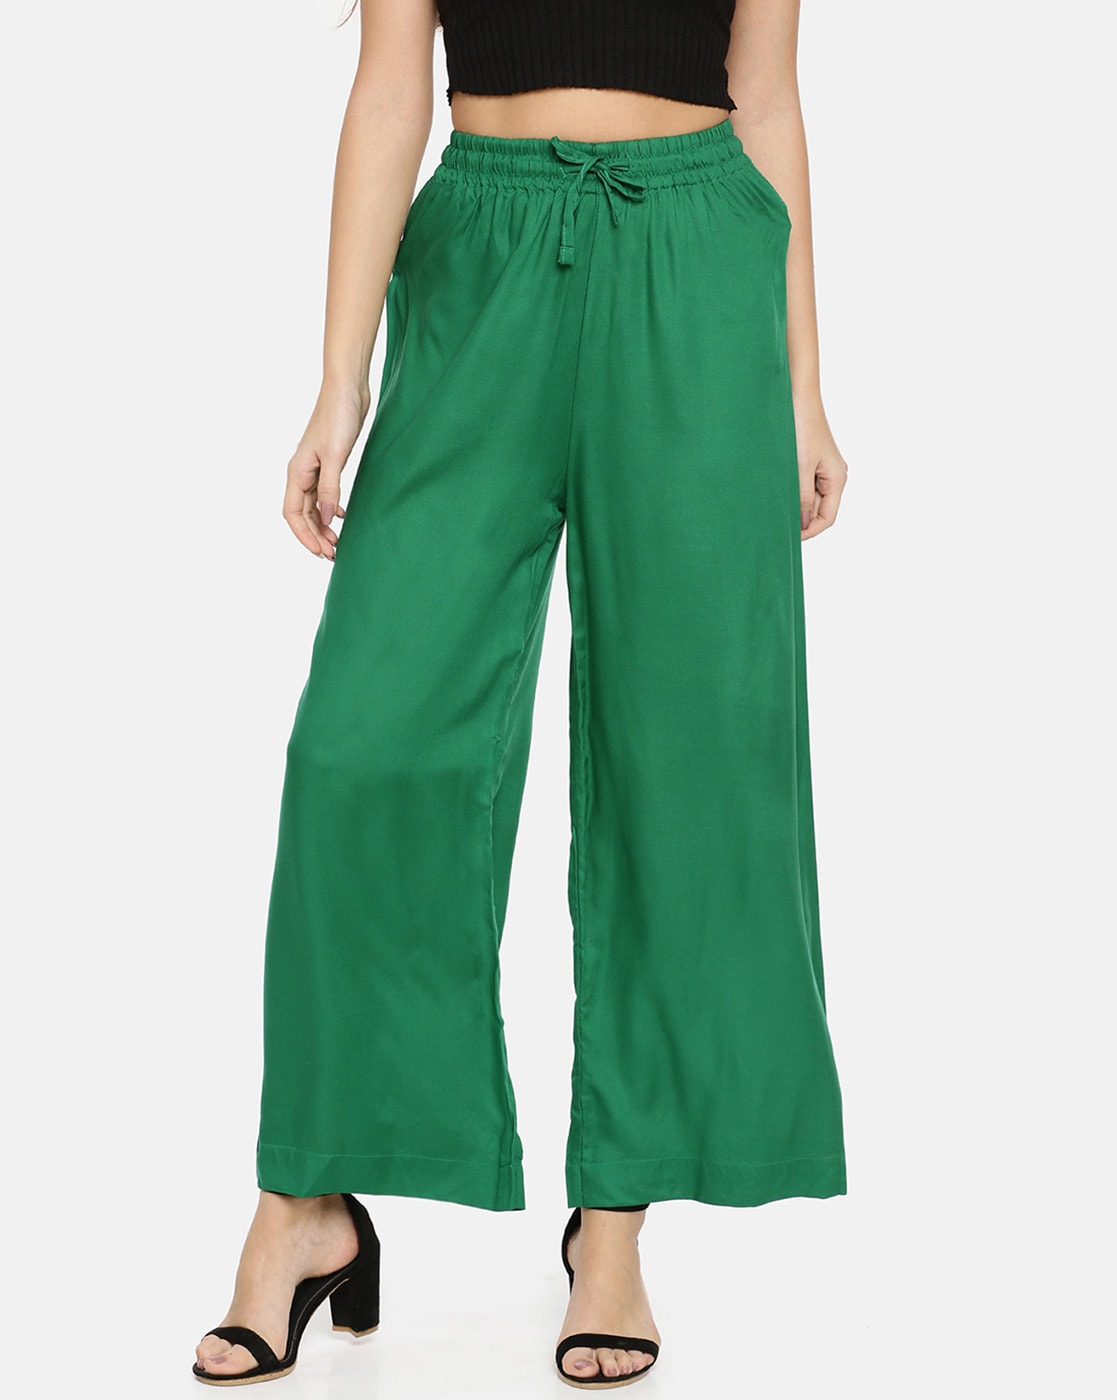 KOTTY Regular Fit Women Green Trousers  Buy KOTTY Regular Fit Women Green  Trousers Online at Best Prices in India  Flipkartcom